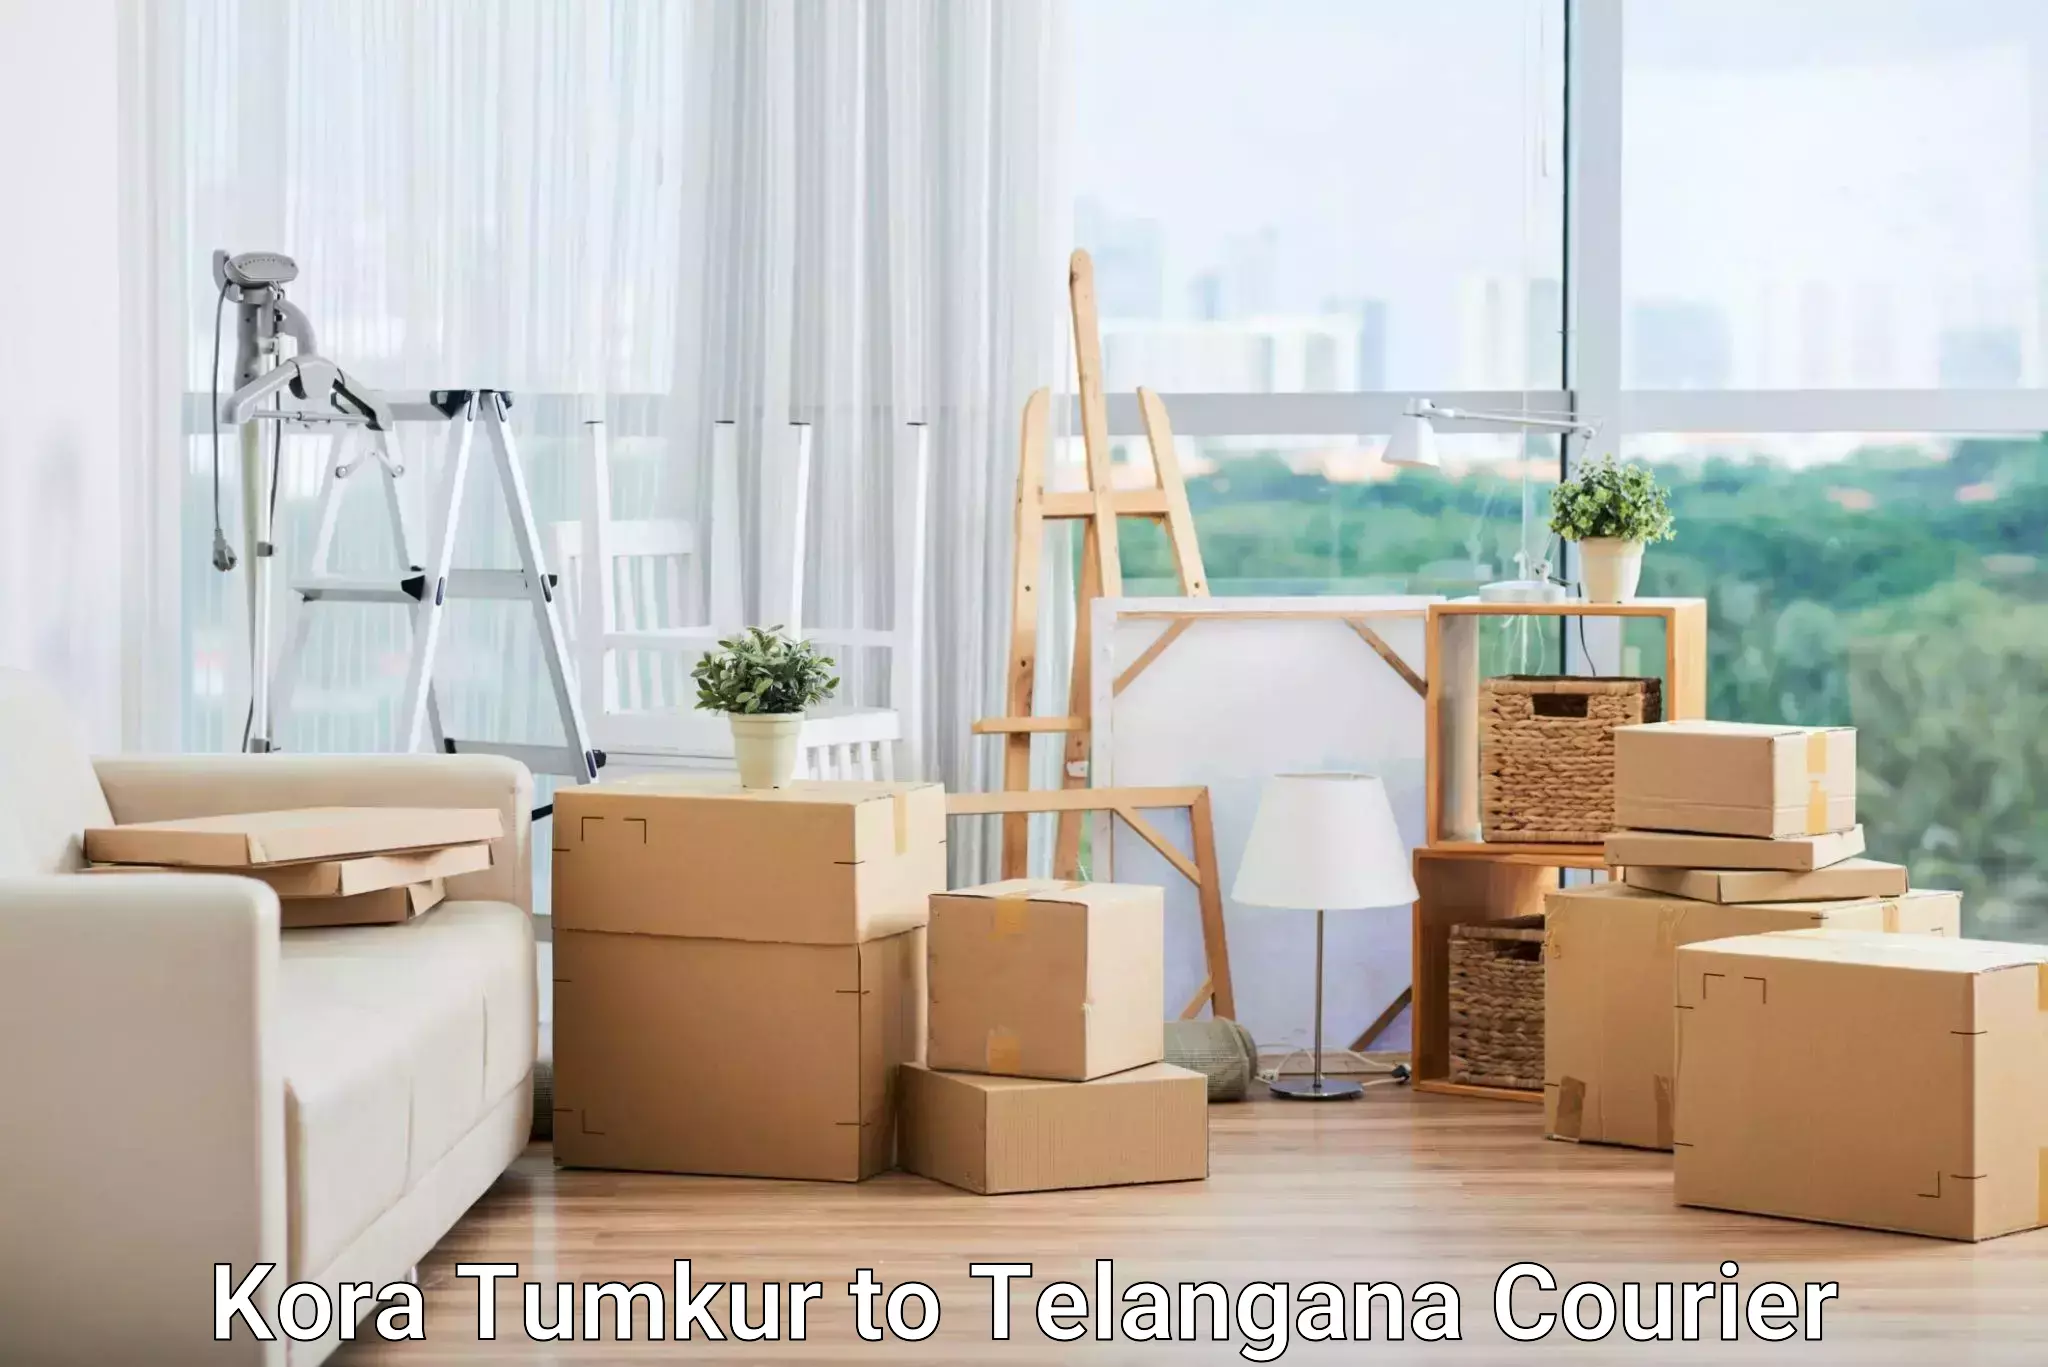 E-commerce logistics support Kora Tumkur to Dubbak